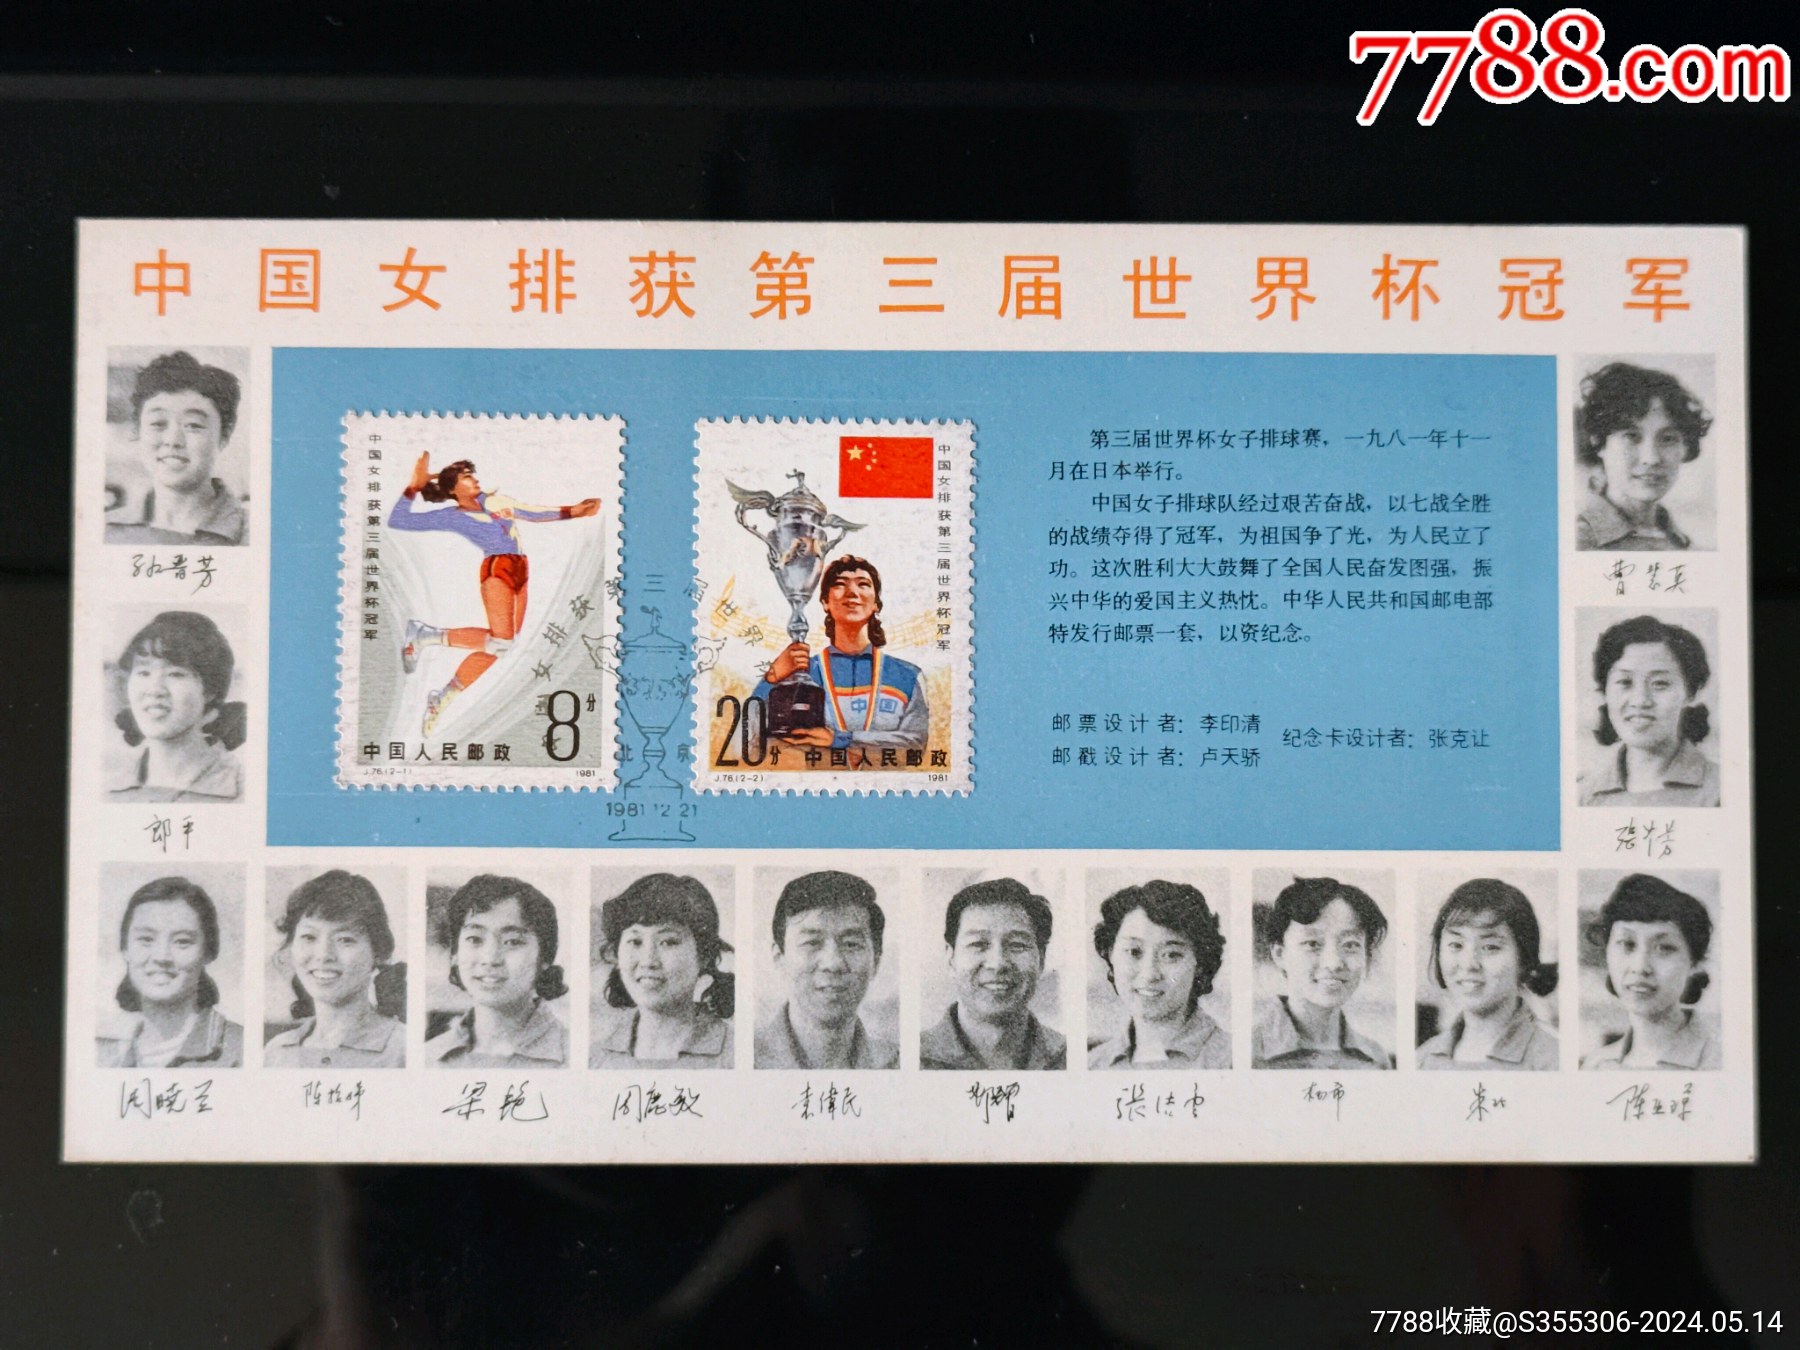 稀少发行量8000套,女排夺冠世界杯【邮票图卡】1981年集邮总公司发行